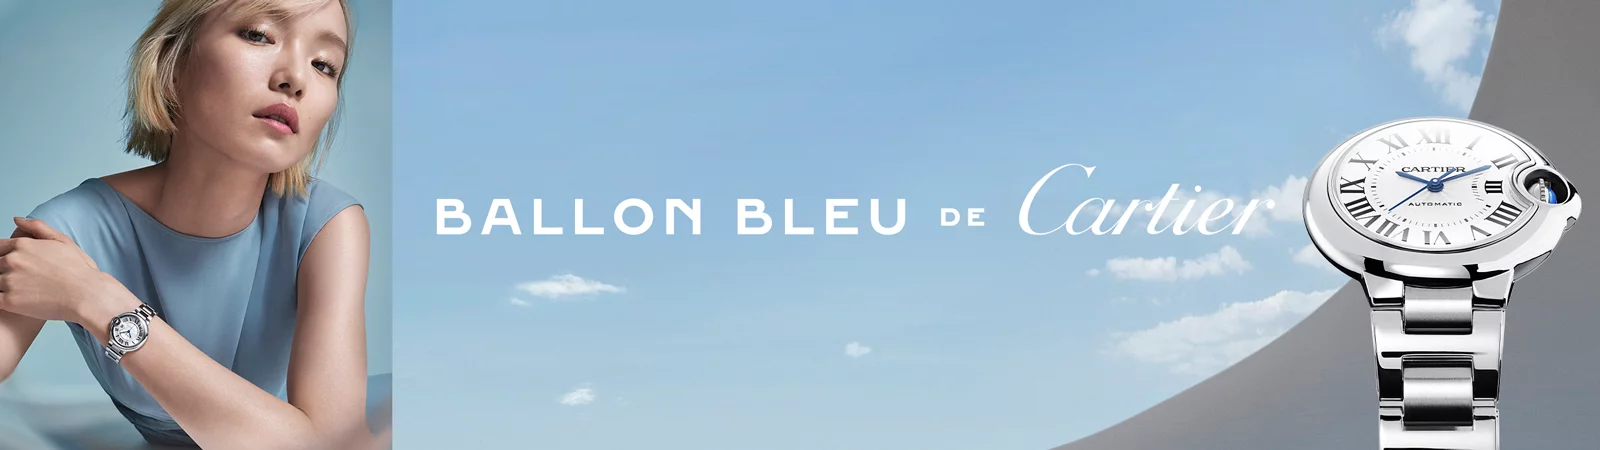 Colección Ballon Bleu de Cartier